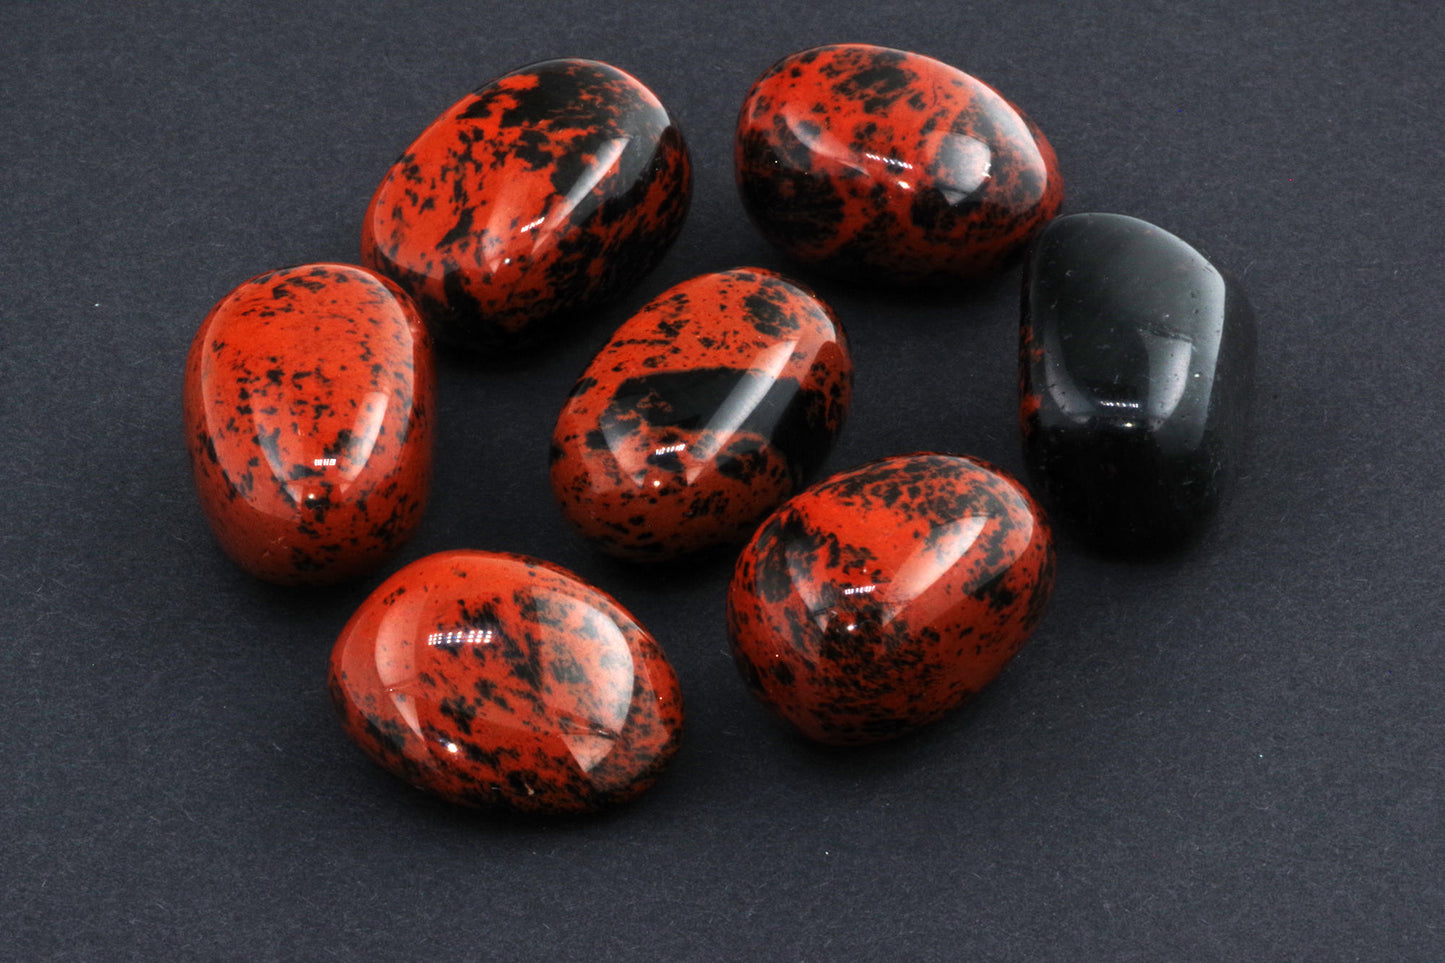 Obsidian av mahogny